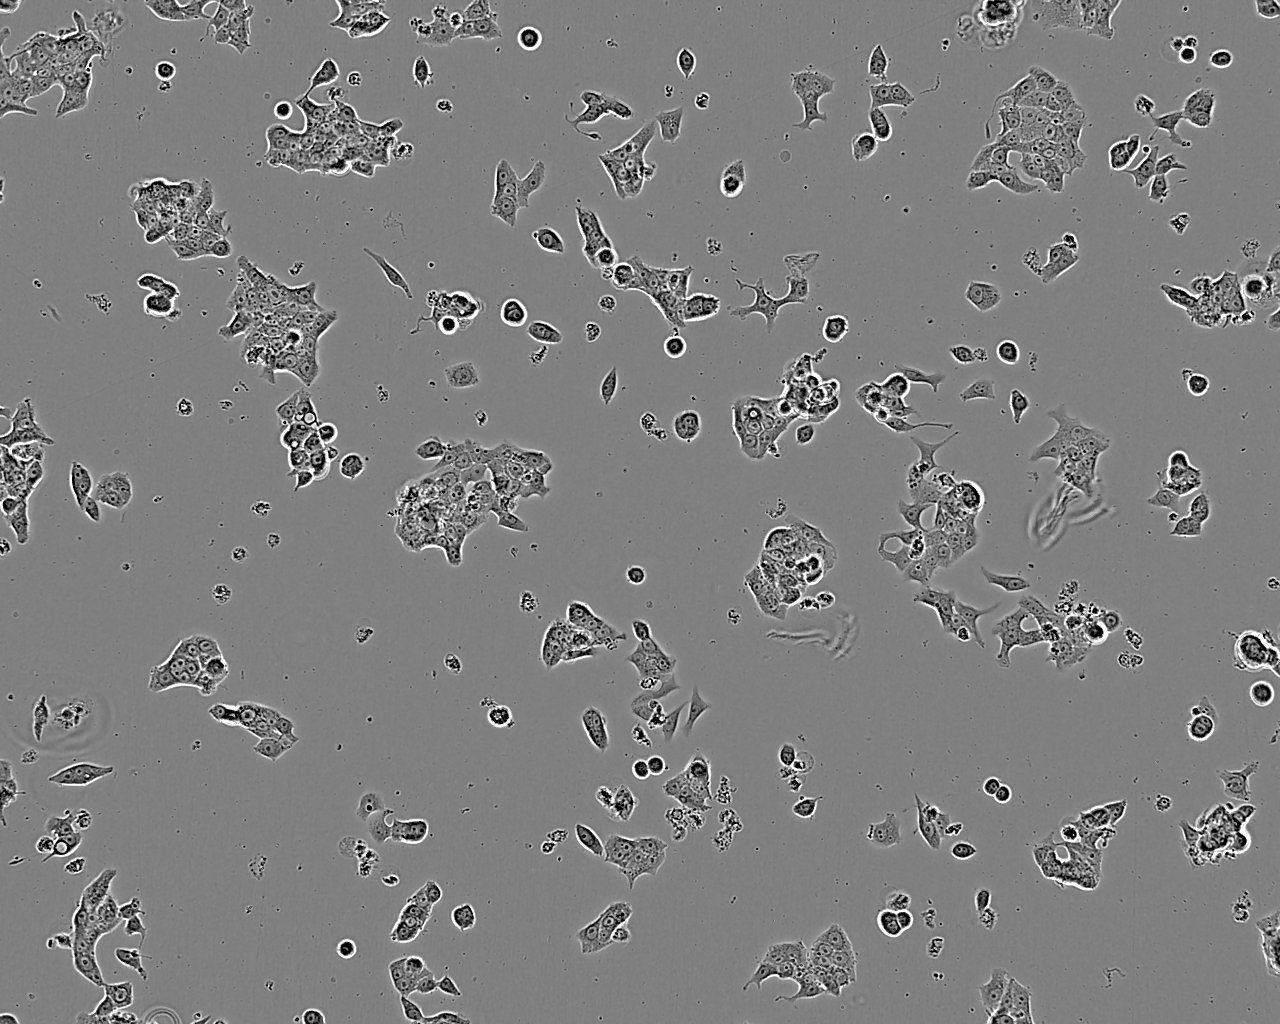 ero 76 Epithelial Cell|非洲绿猴肾传代细胞(有STR鉴定),ero 76 Epithelial Cell